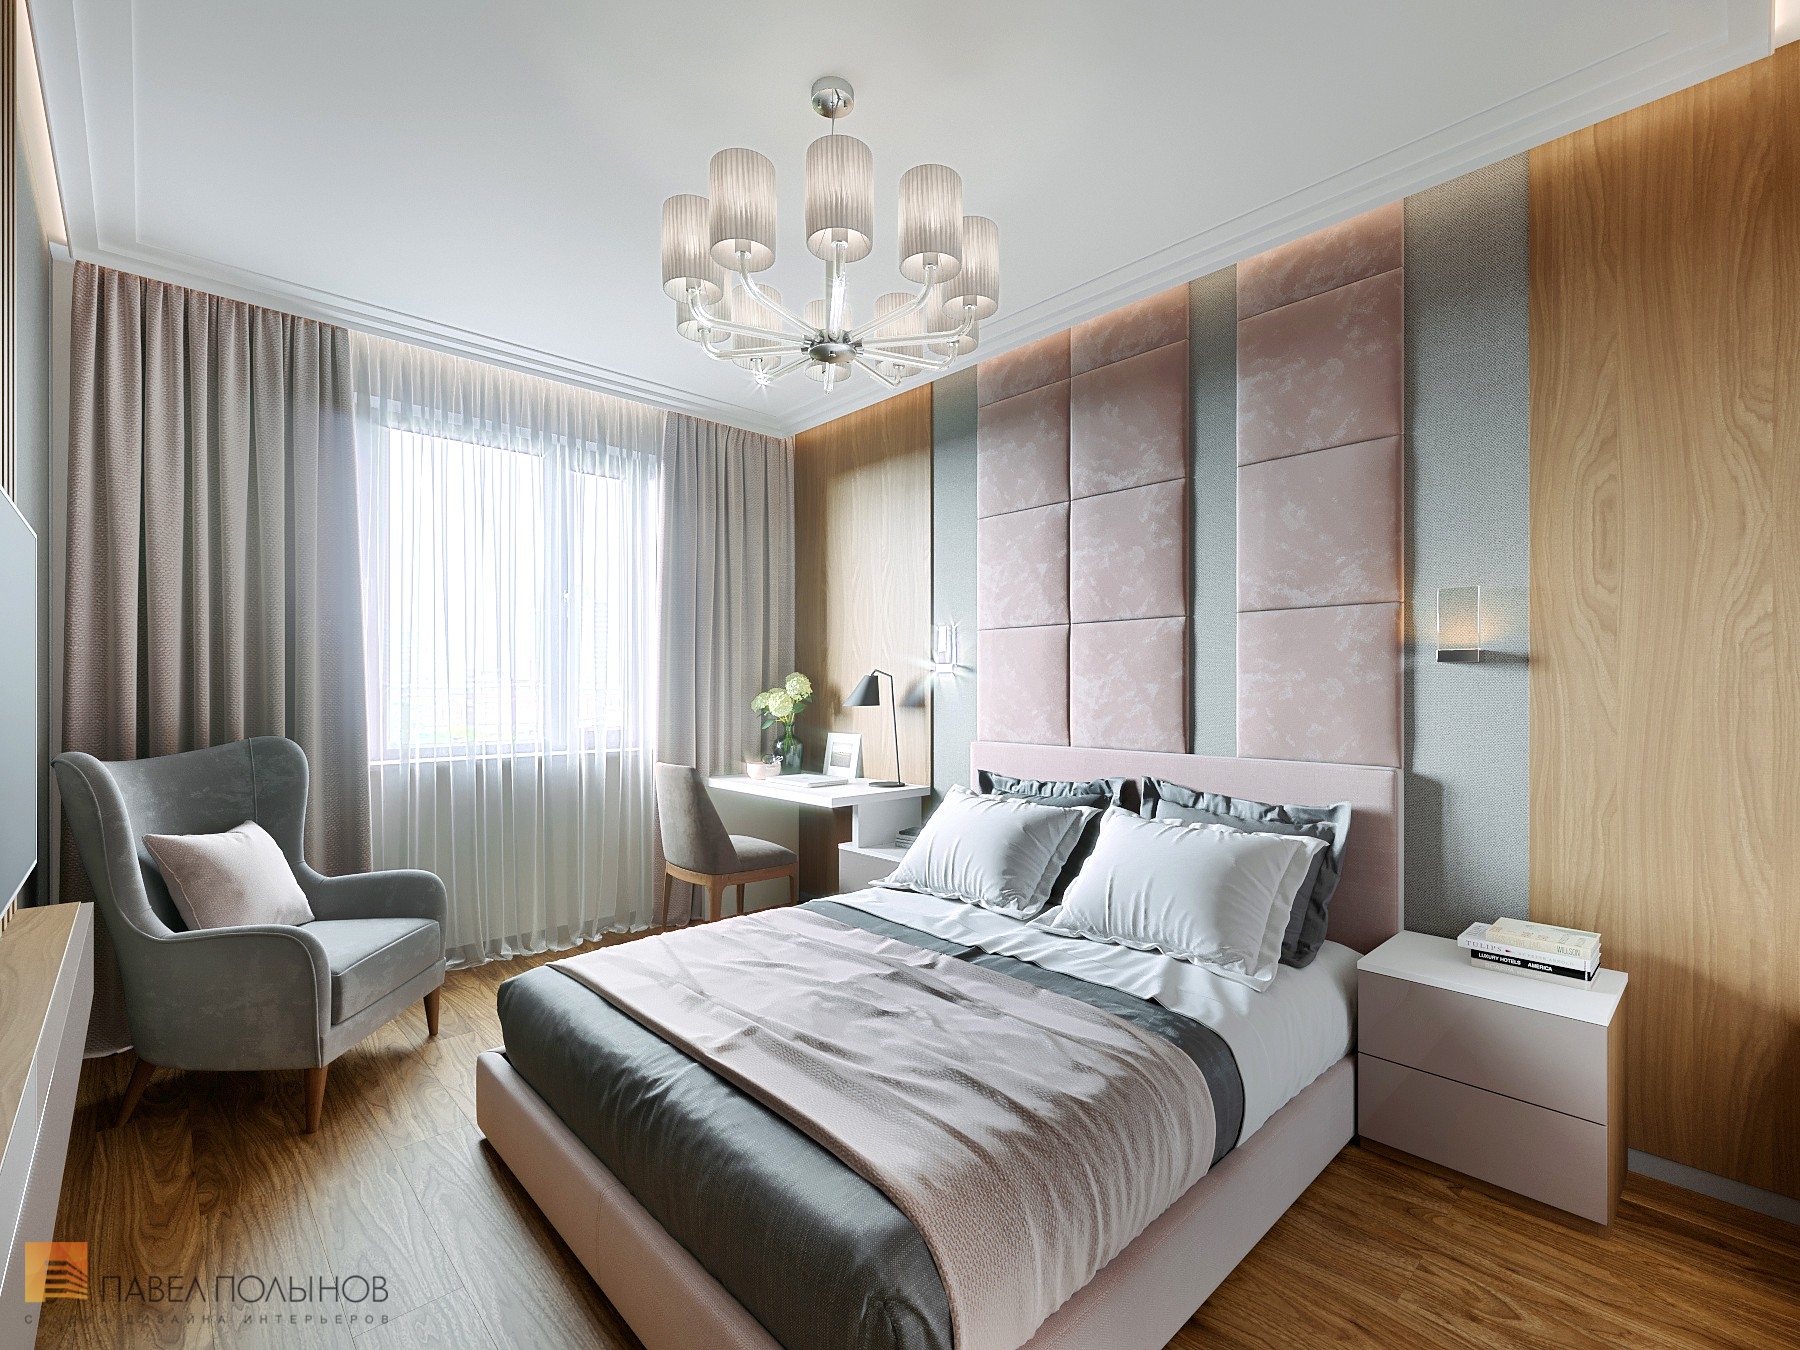 Фото спальня из проекта «Интерьер квартиры с современном стиле с элементами скандинавского, ЖК «Skandi Klubb», 77 кв.м.»